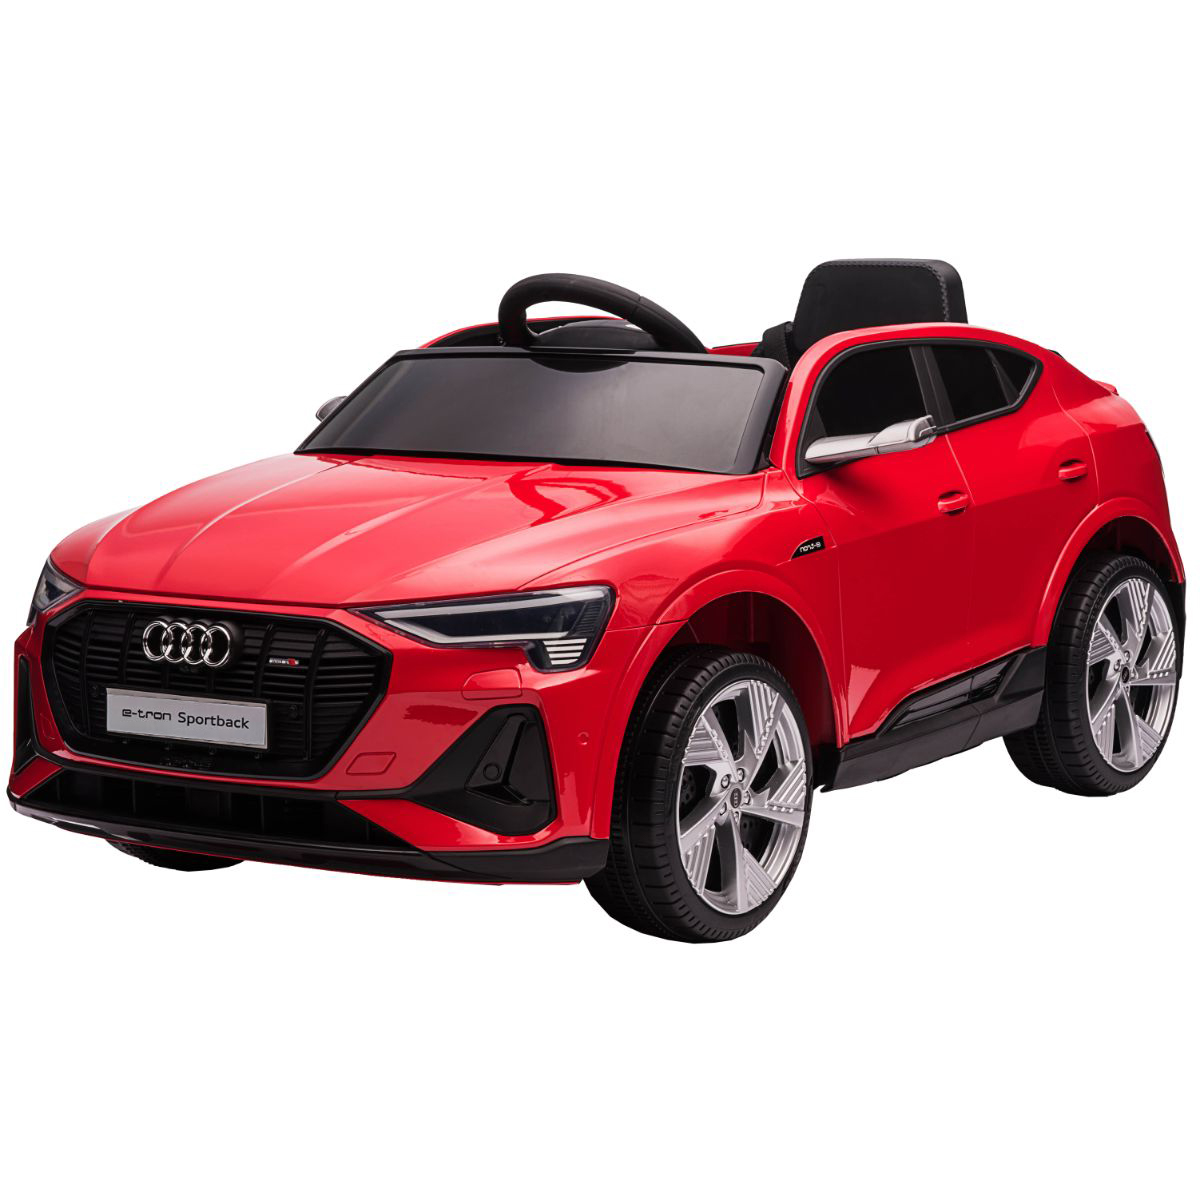 Masinuta electrica, Audi E-Tron Sport Back, rosu Audi imagine 2022